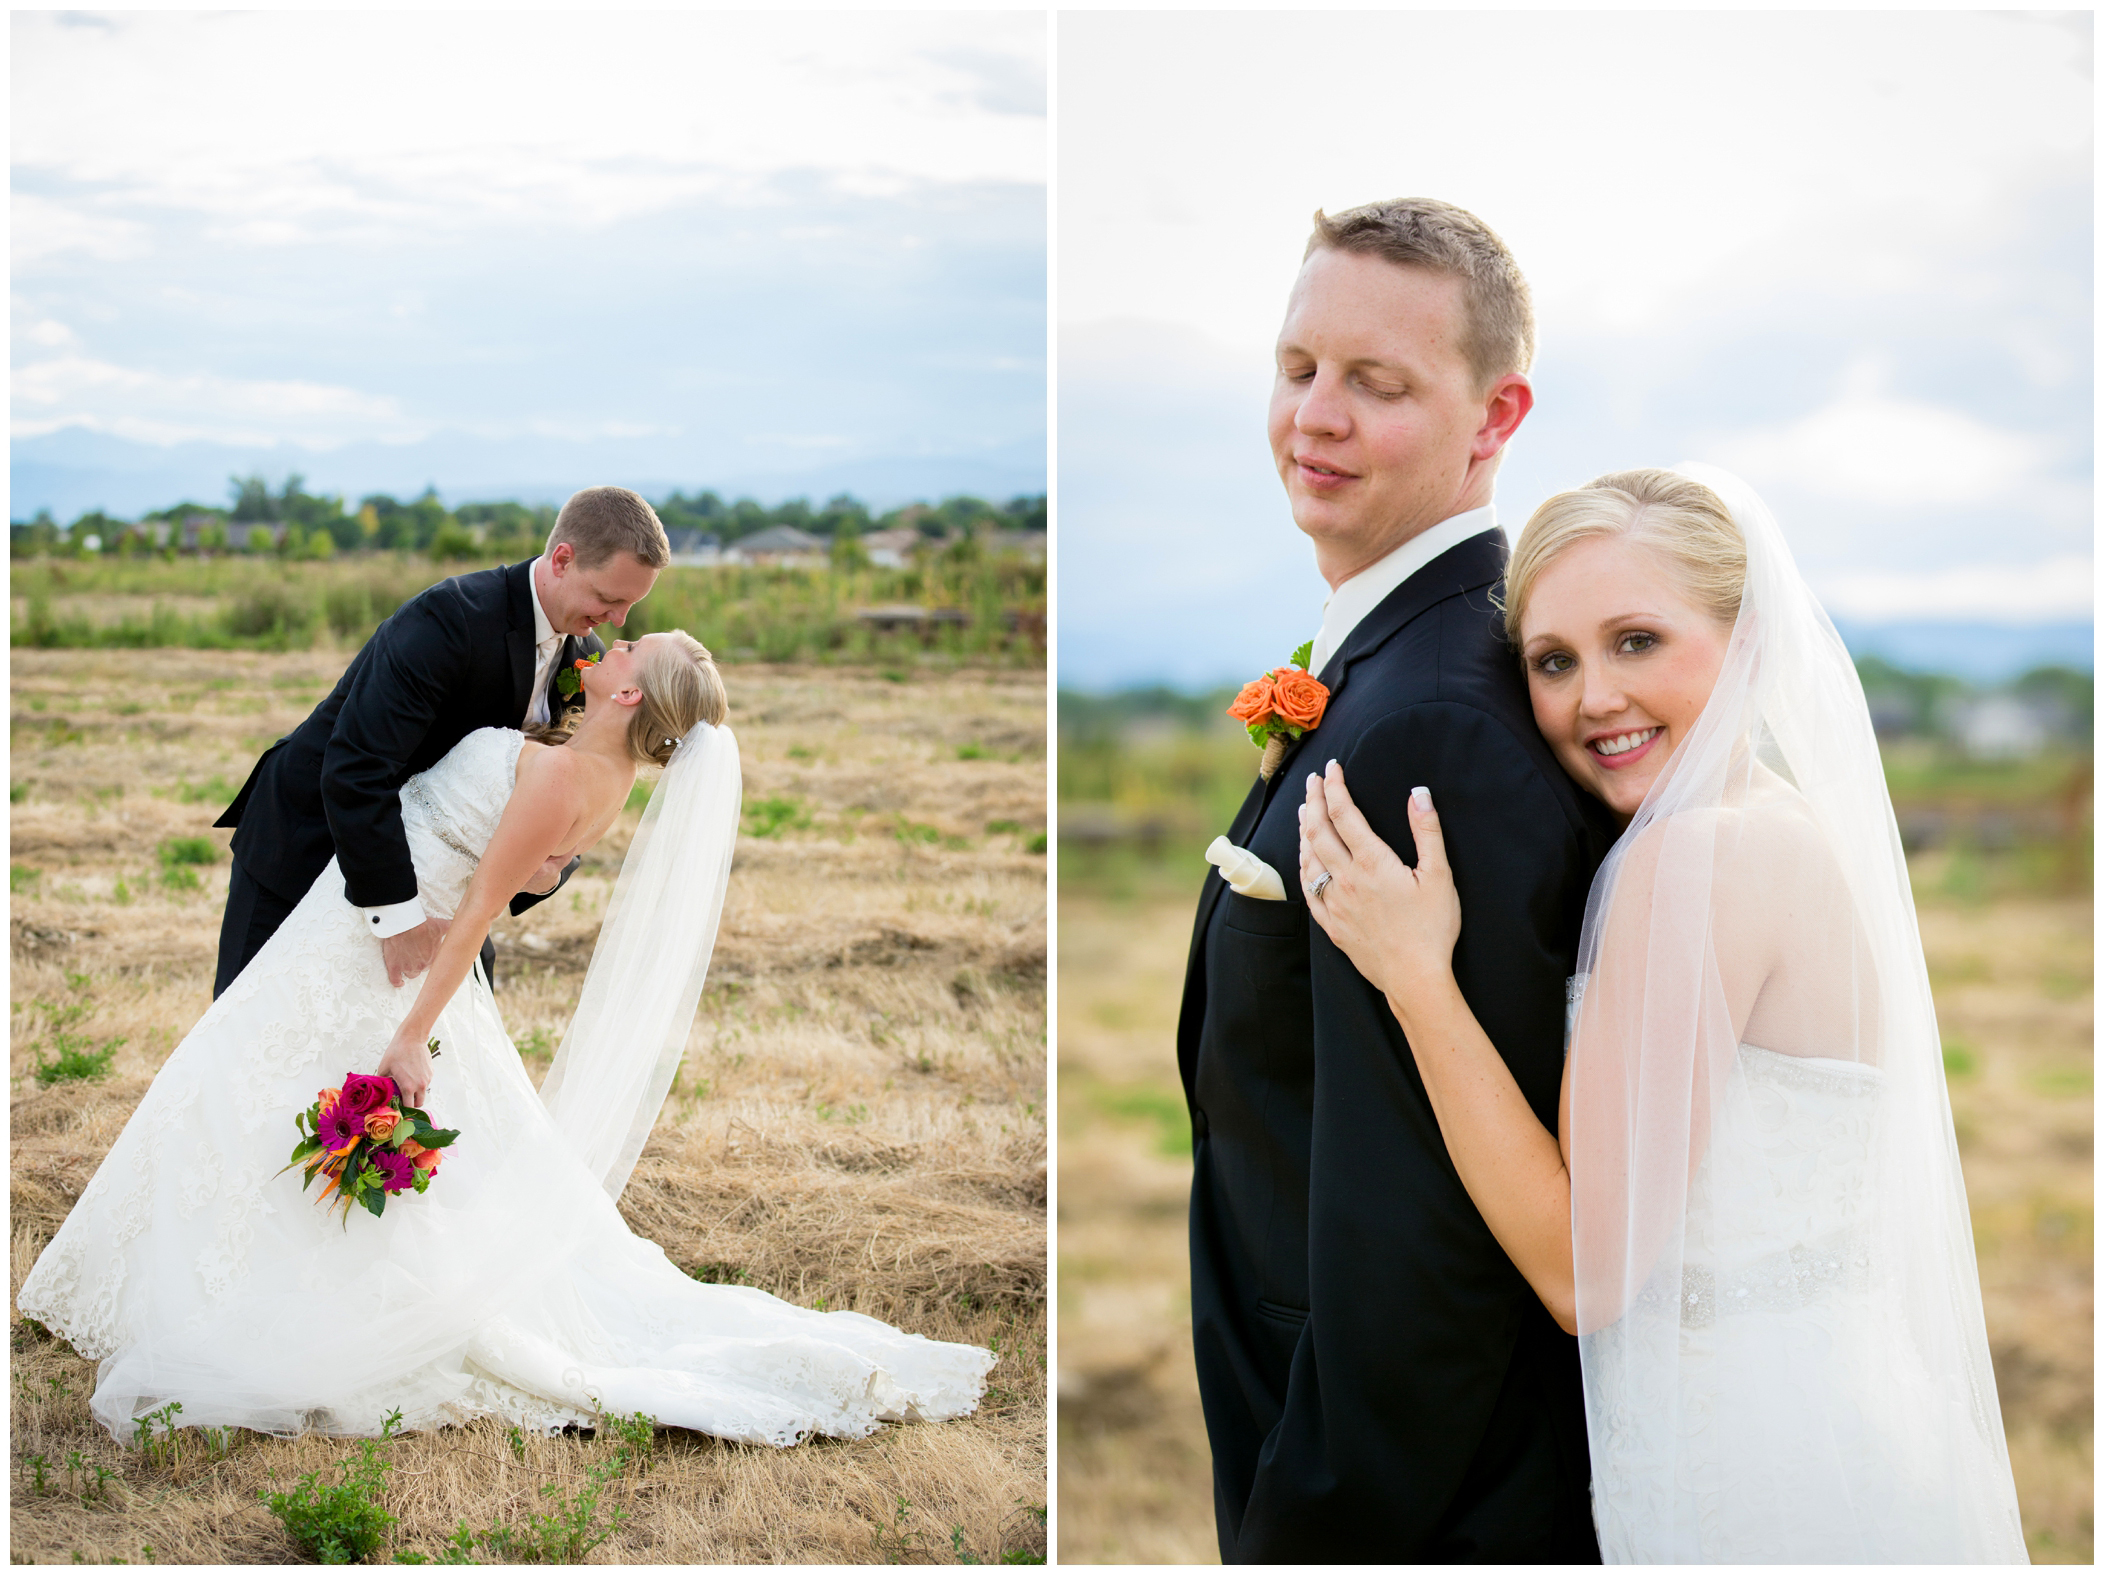 Colorado garden wedding photography by Plum Pretty Photography